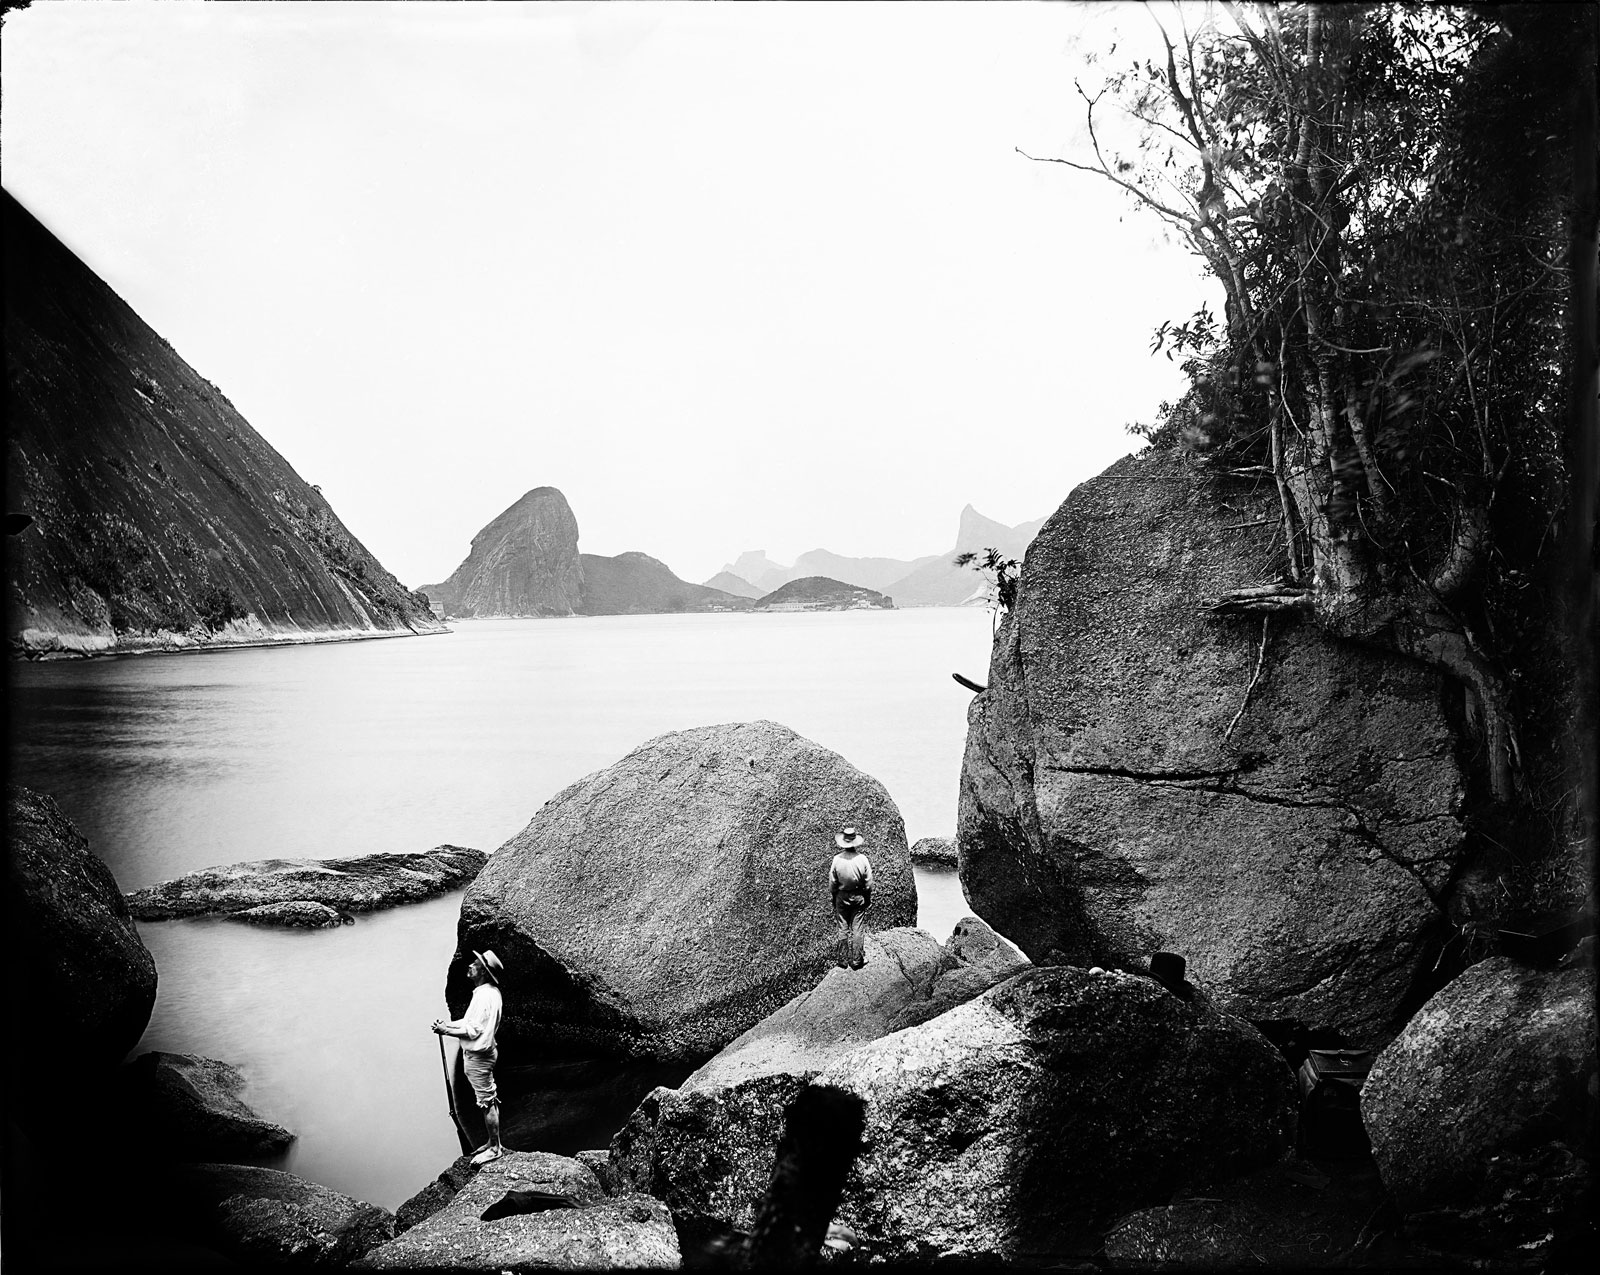 Entrance to Guanabara bay from Adão e Eva (Adam and Eve Beach), Niterói, circa 1890